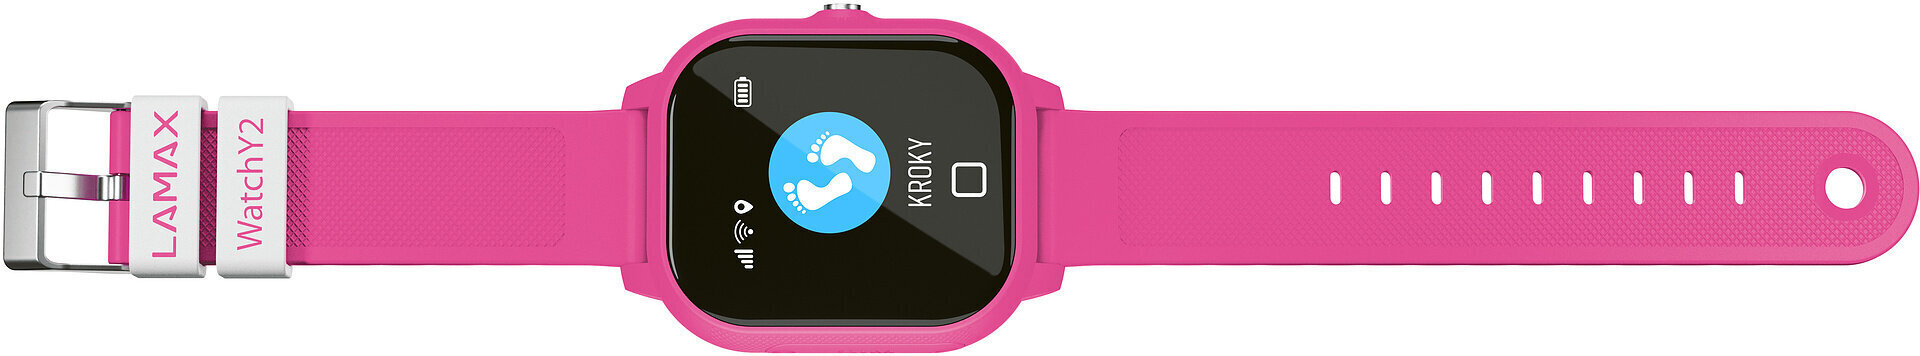 Išmanusis laikrodis Lamax WatchY2 Pink kaina ir informacija | Išmanieji laikrodžiai (smartwatch) | pigu.lt